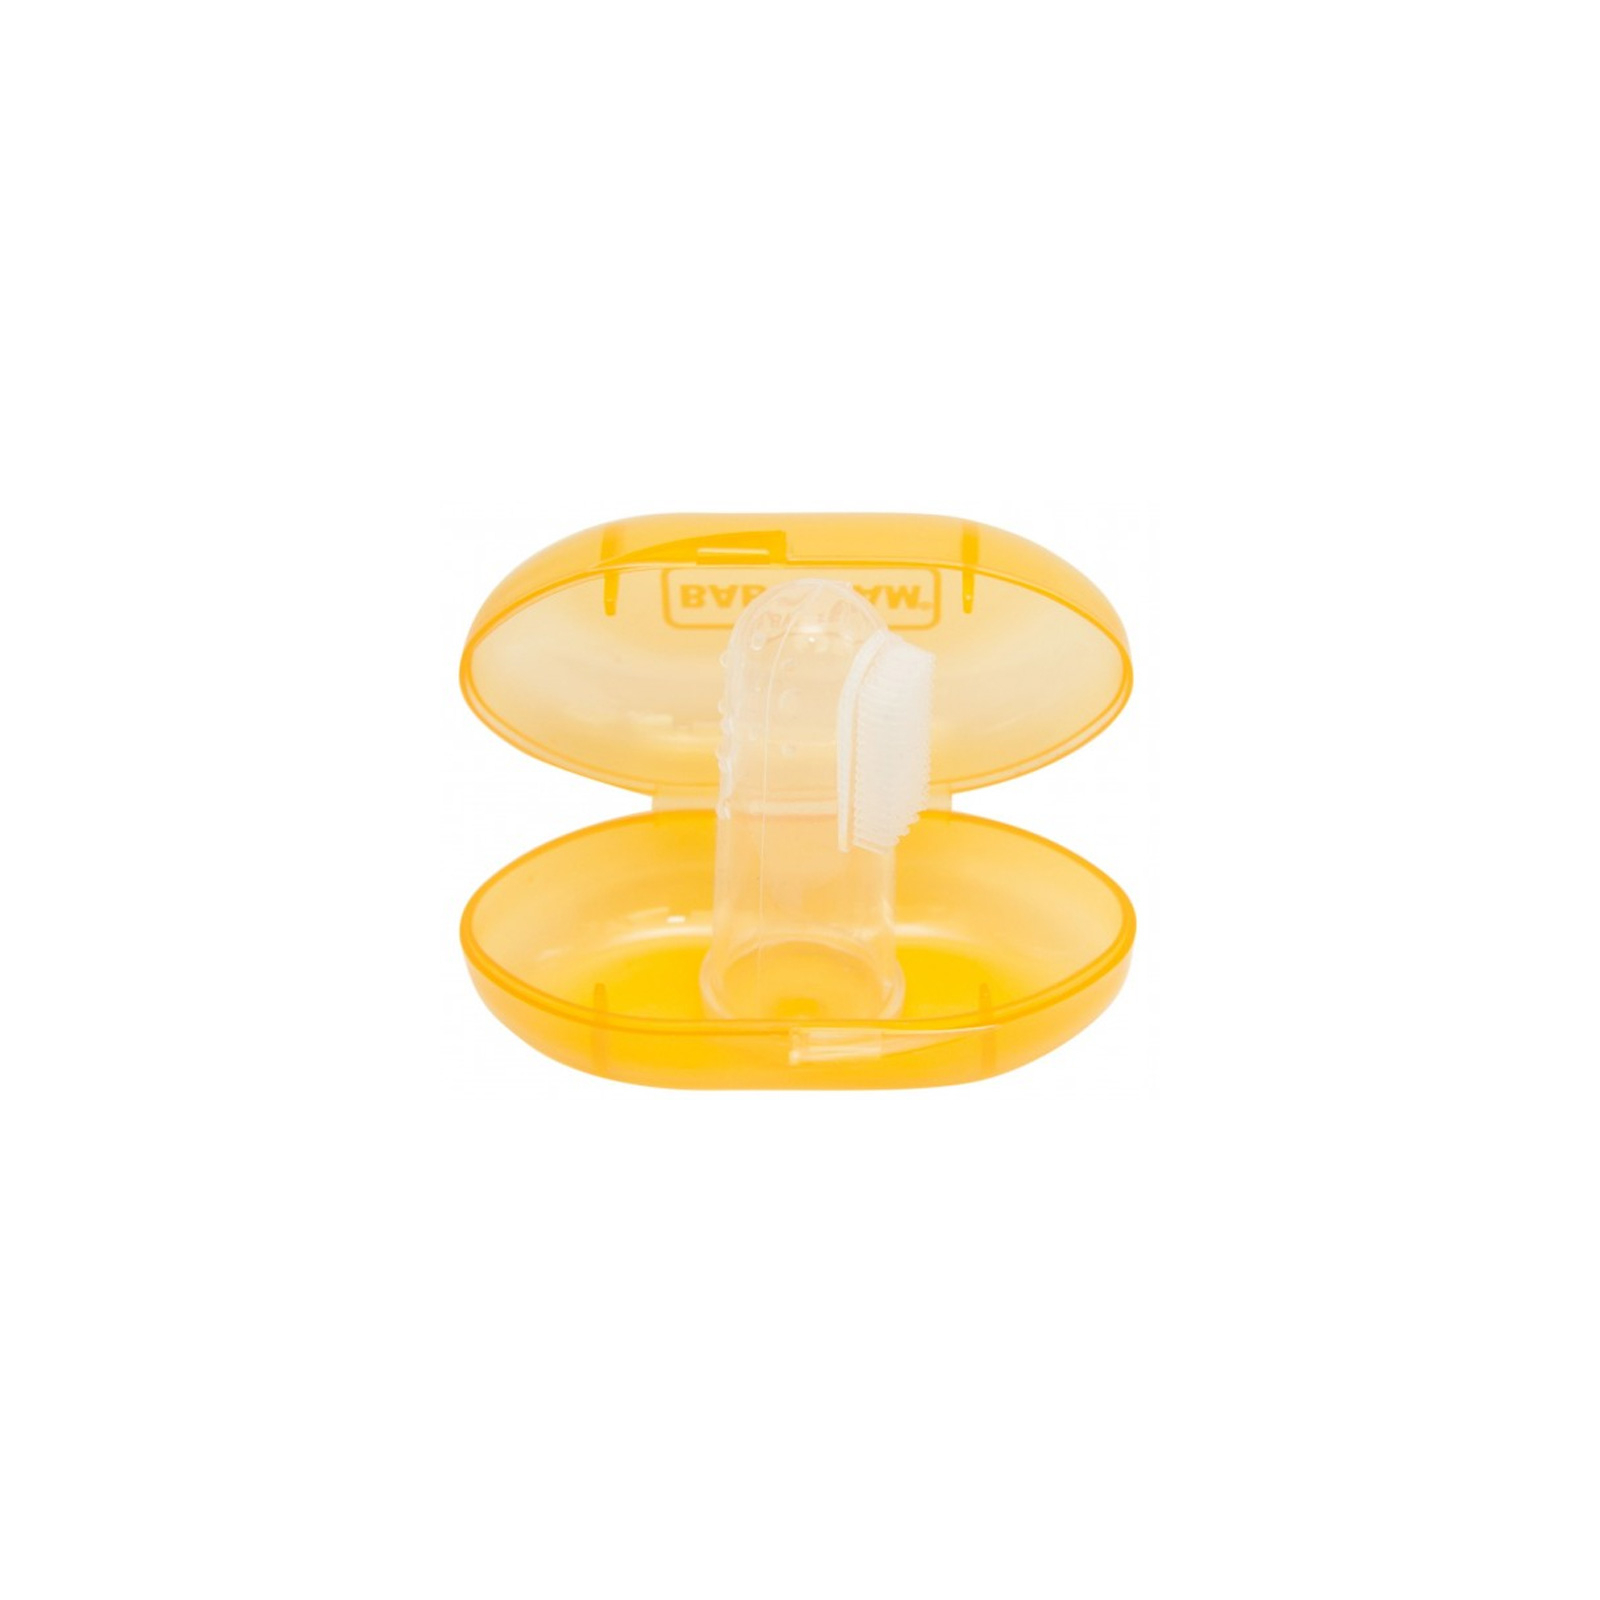 Детская зубная щетка Baby Team силиконовая щетка-массажер с контейнером (7200_оранжевый)